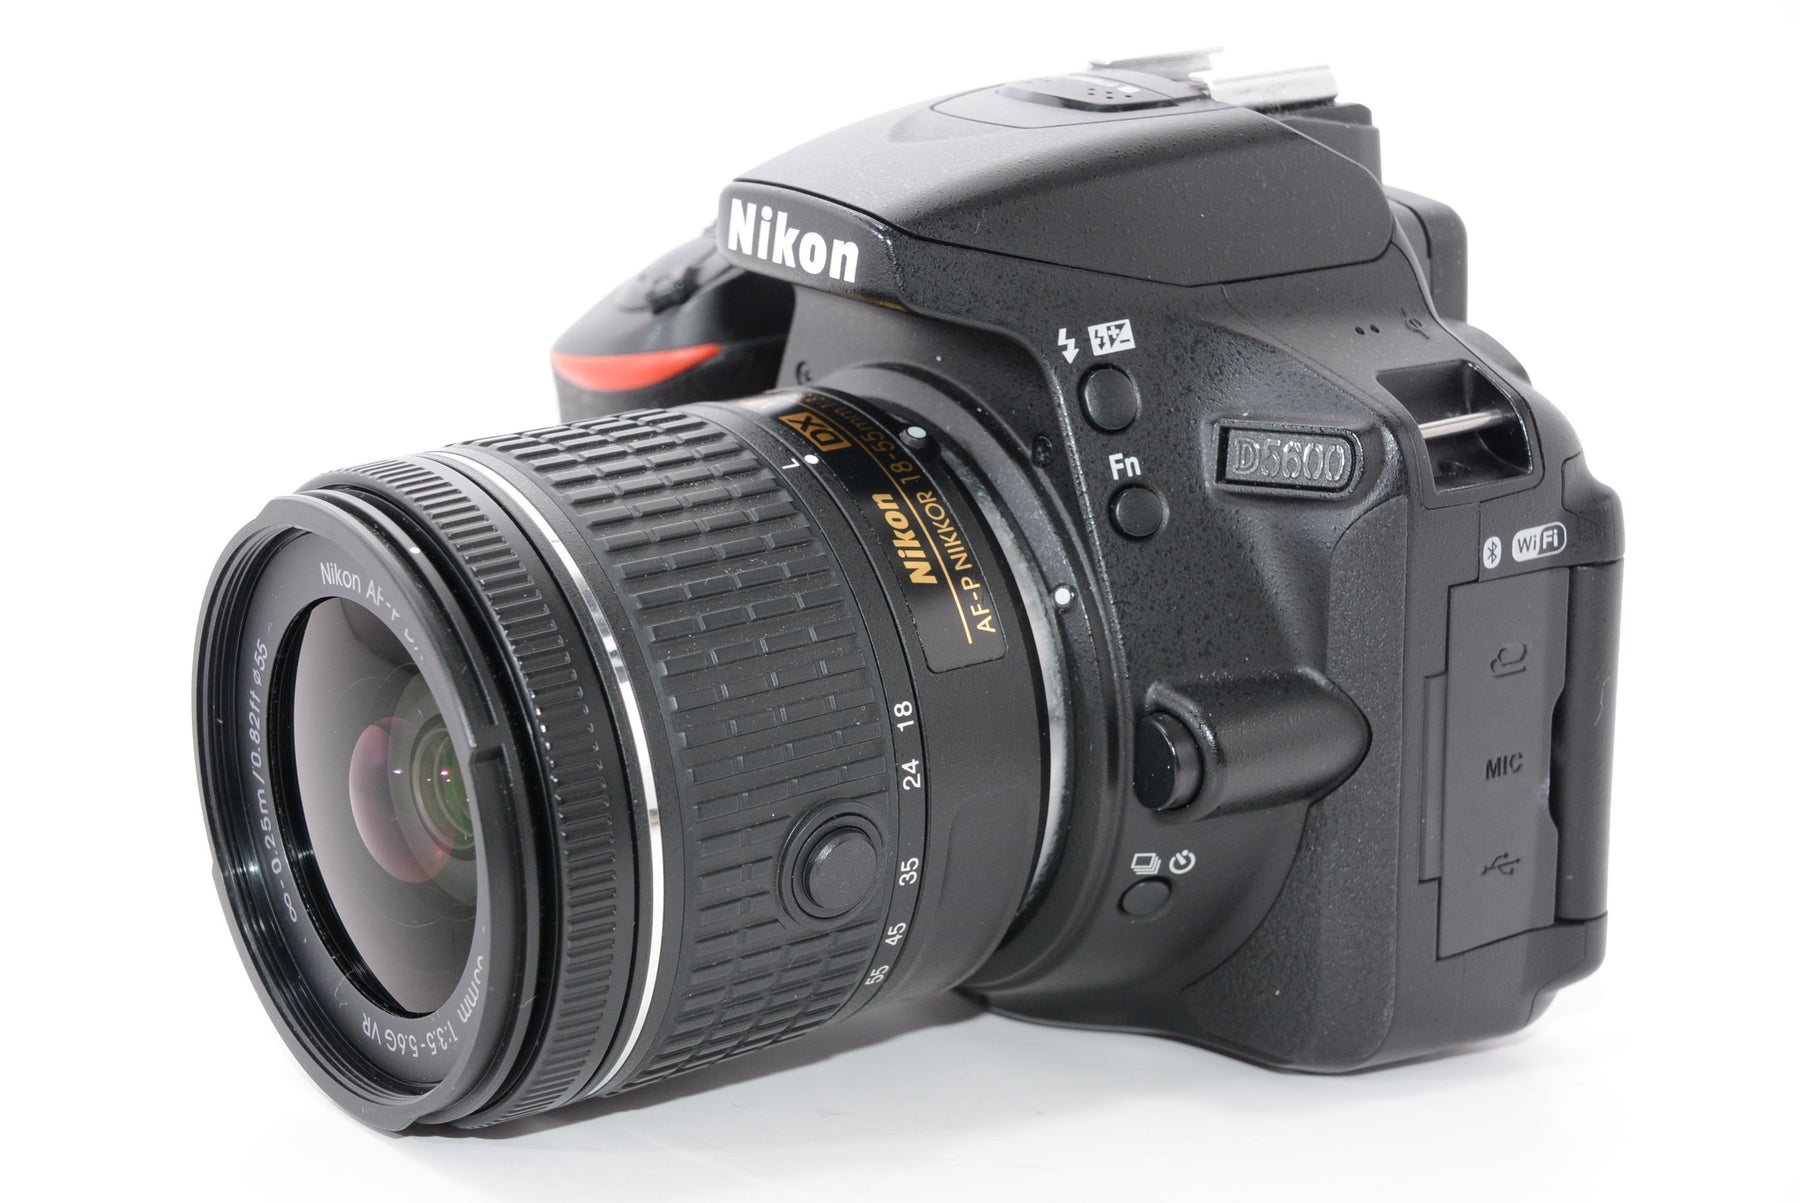 Nikon  デジタル一眼レフカメラ D5600 18-55 VR レンズキット